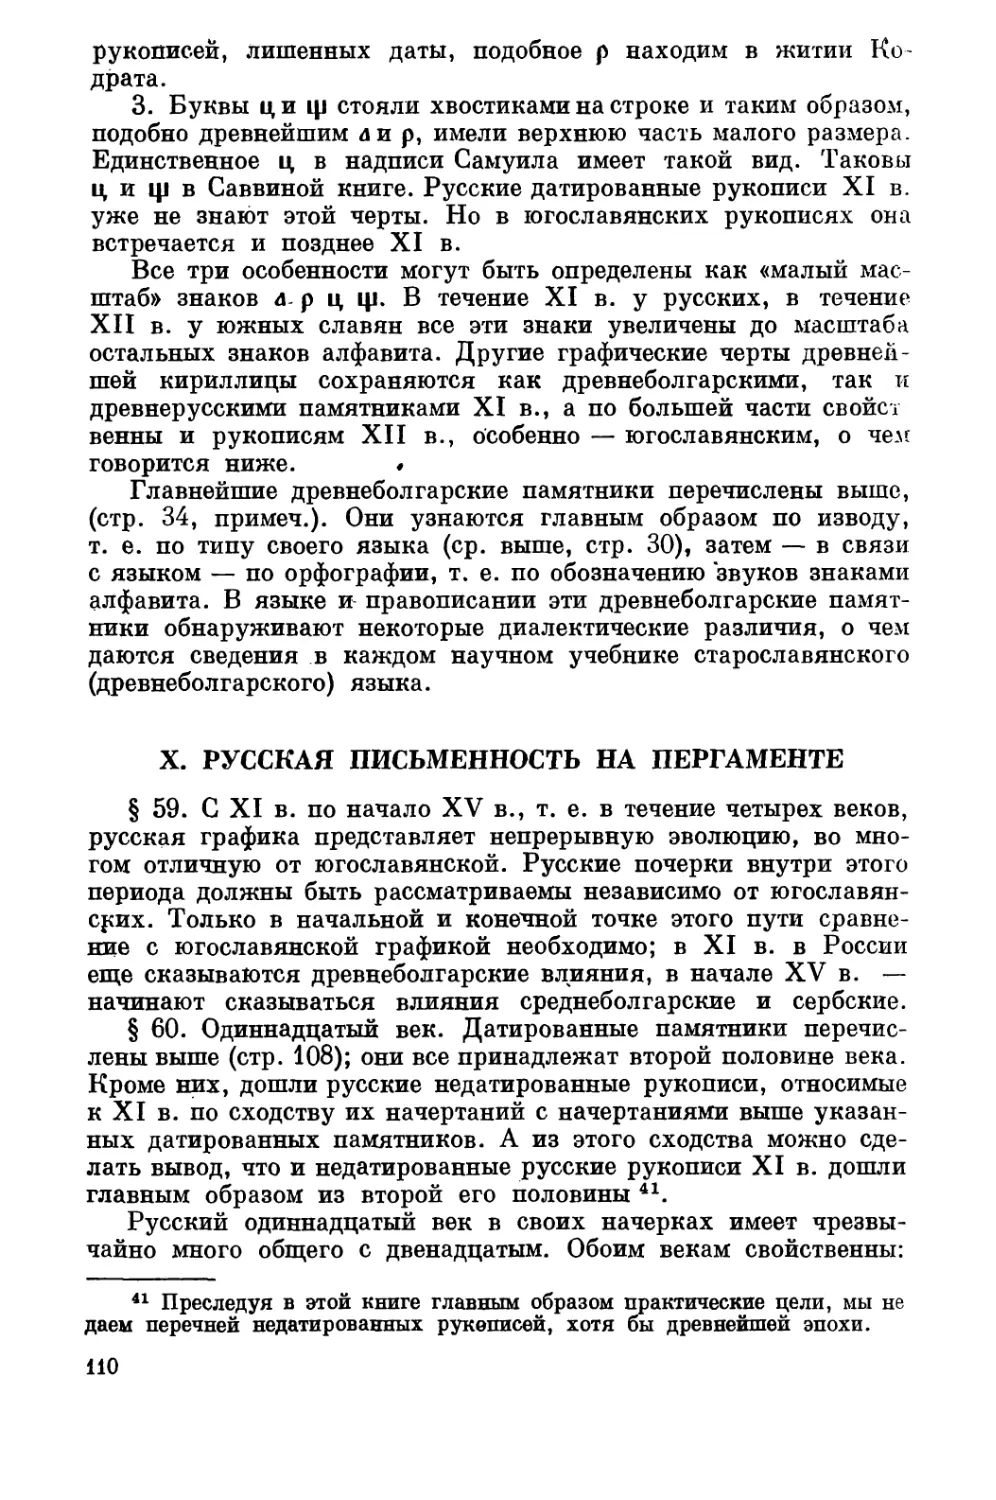 X. Русская письменность на пергаменте